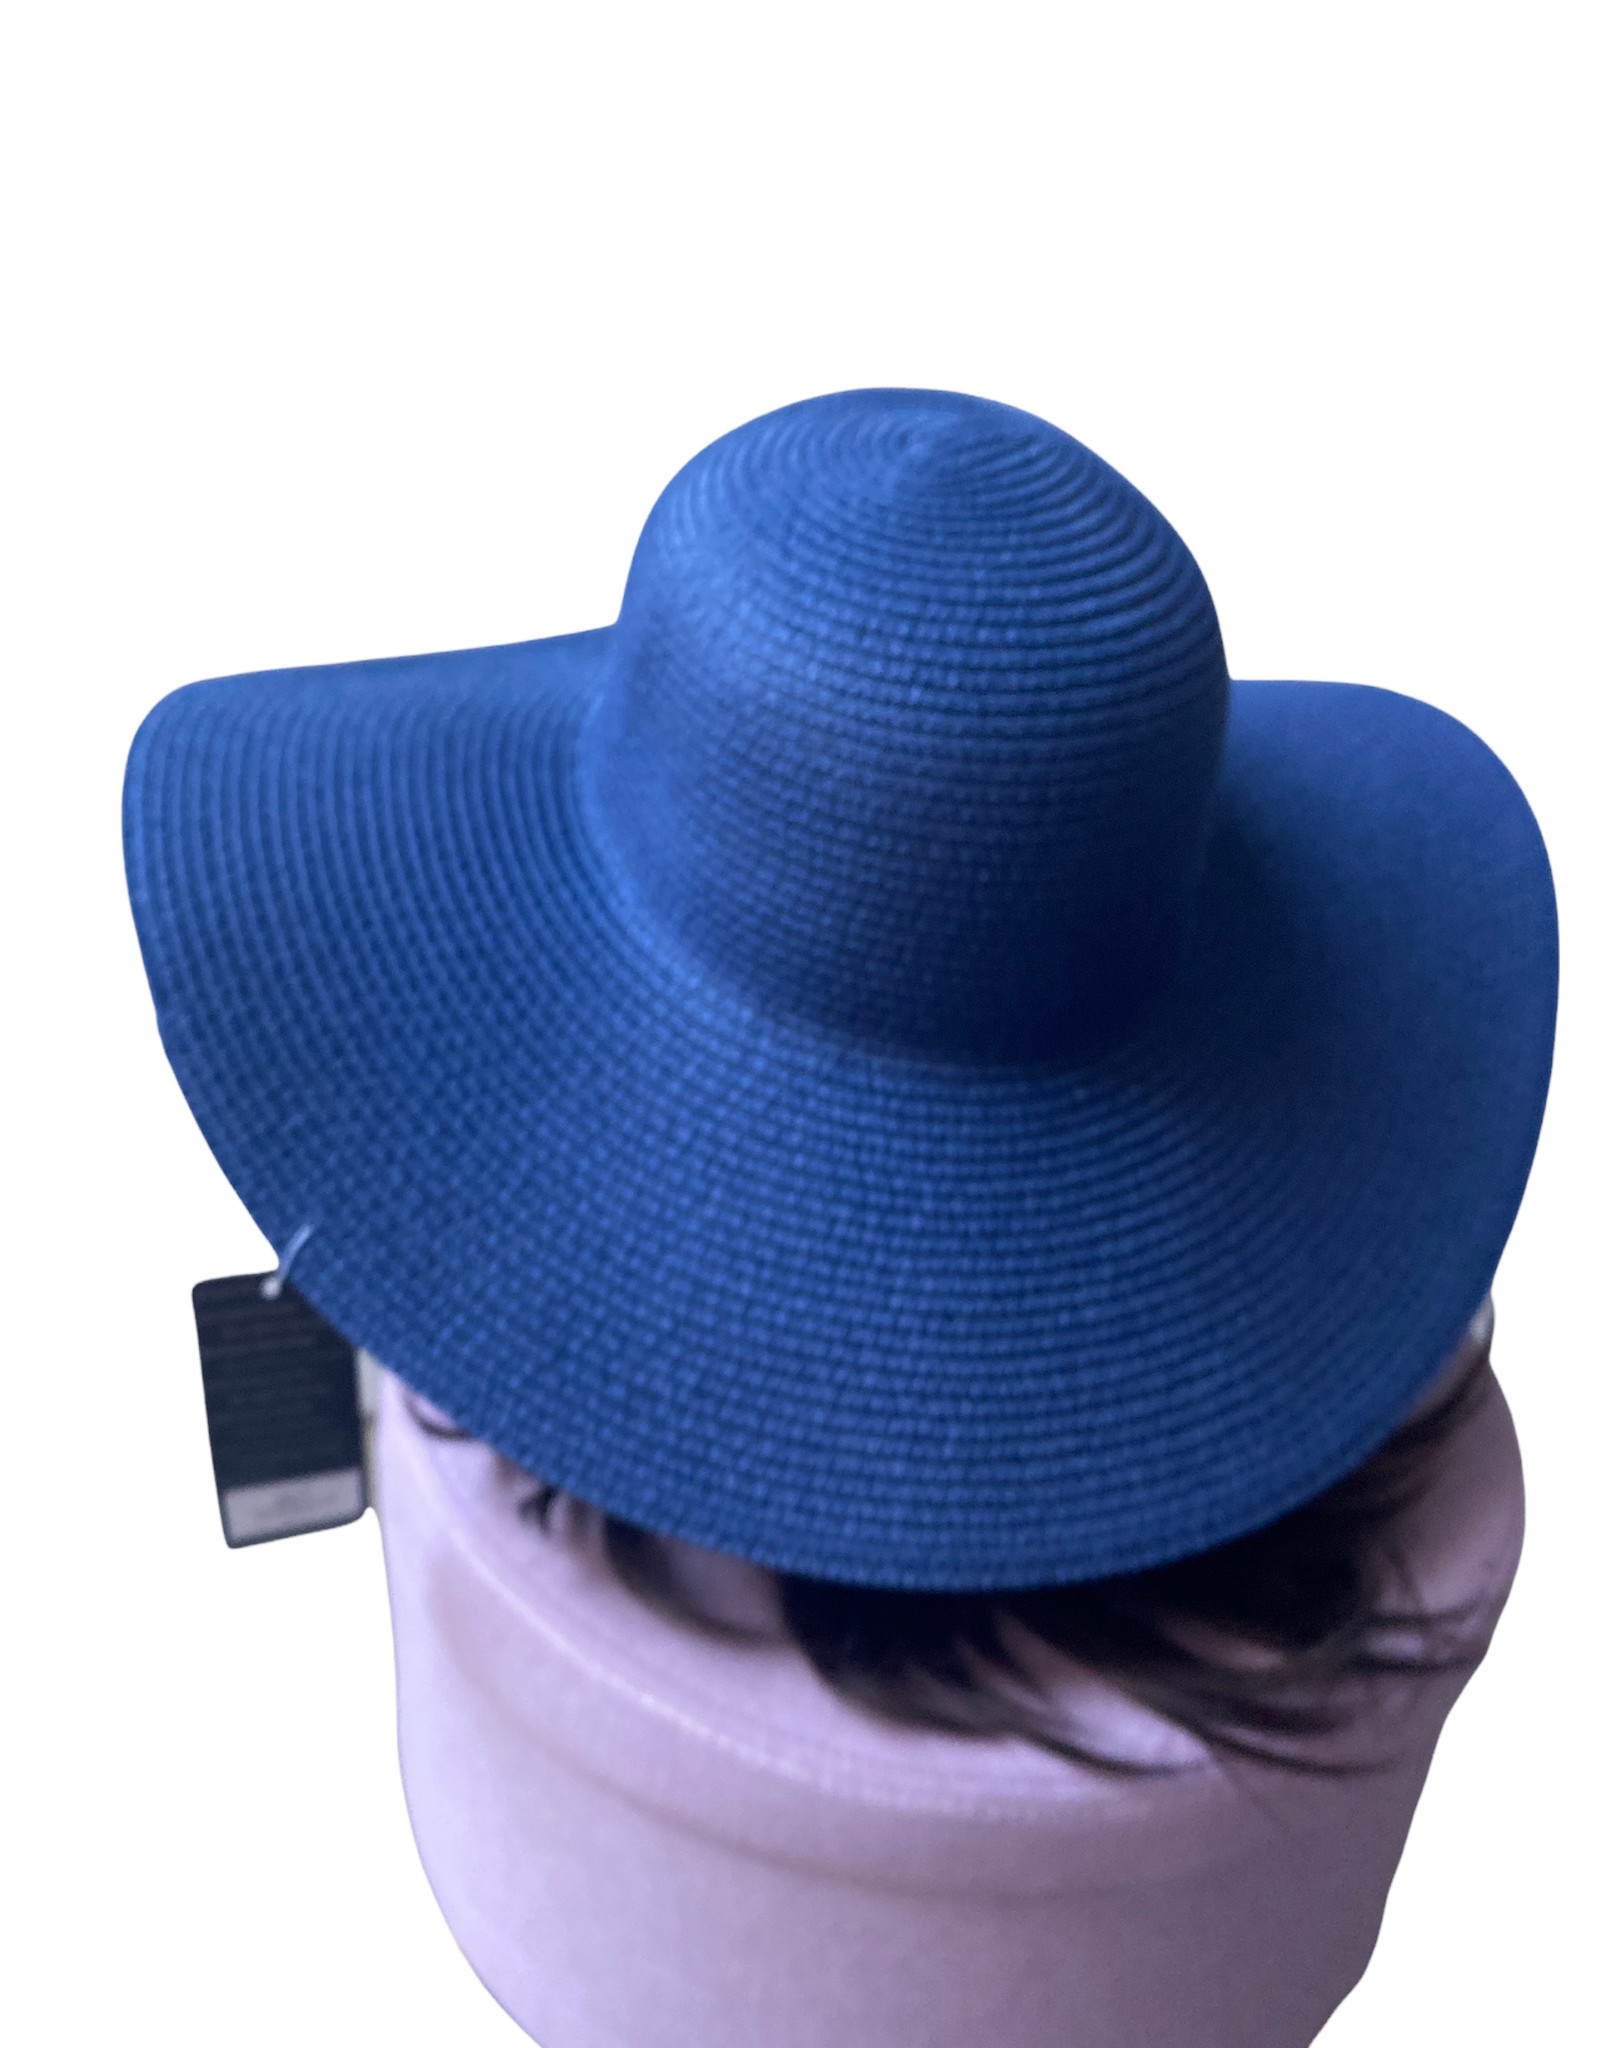 Classy hat with wide brim. Convex top